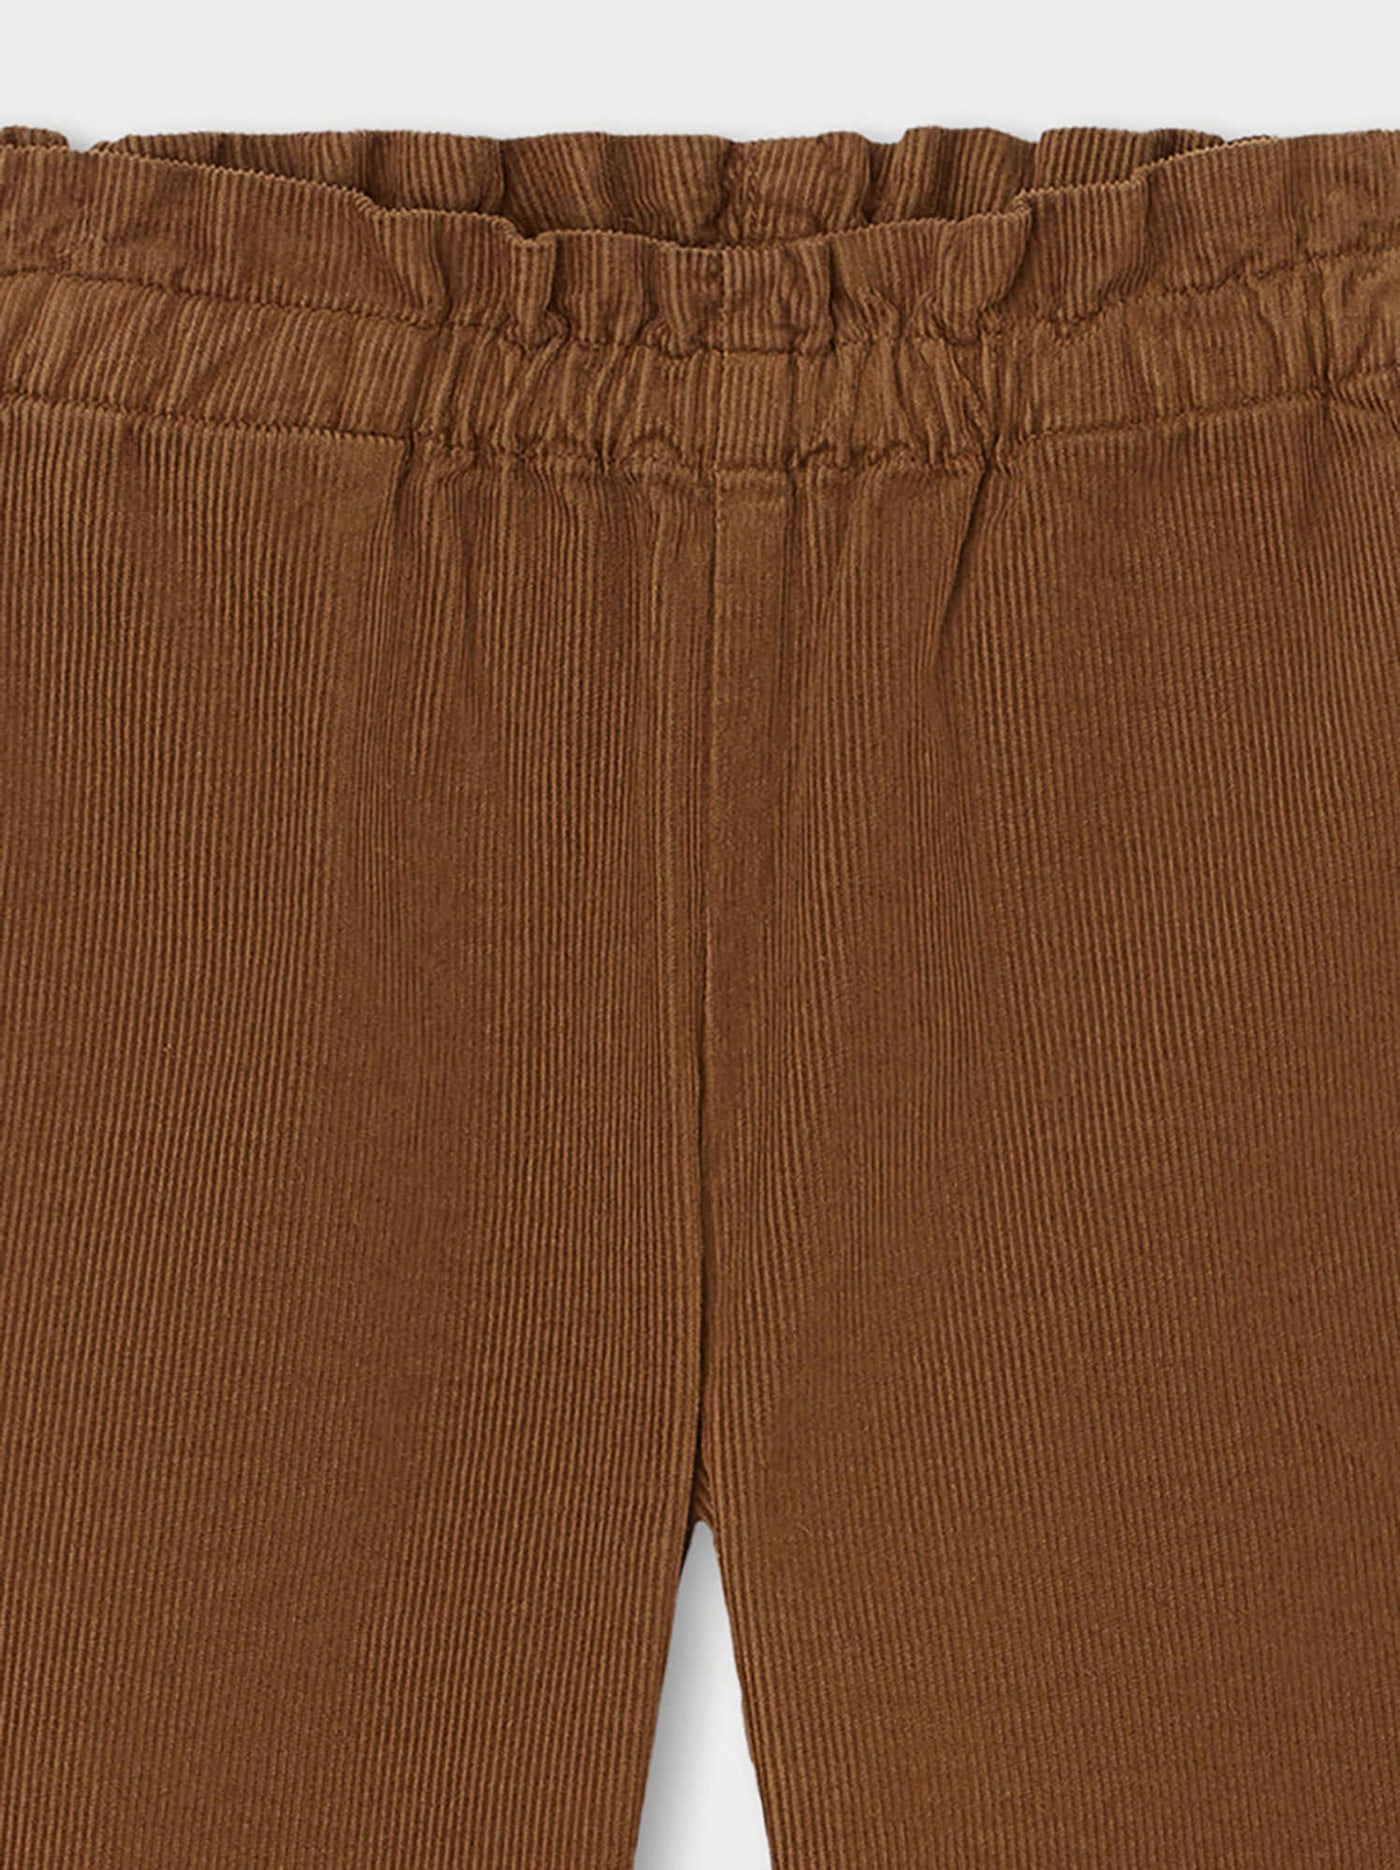 Pants chestnut